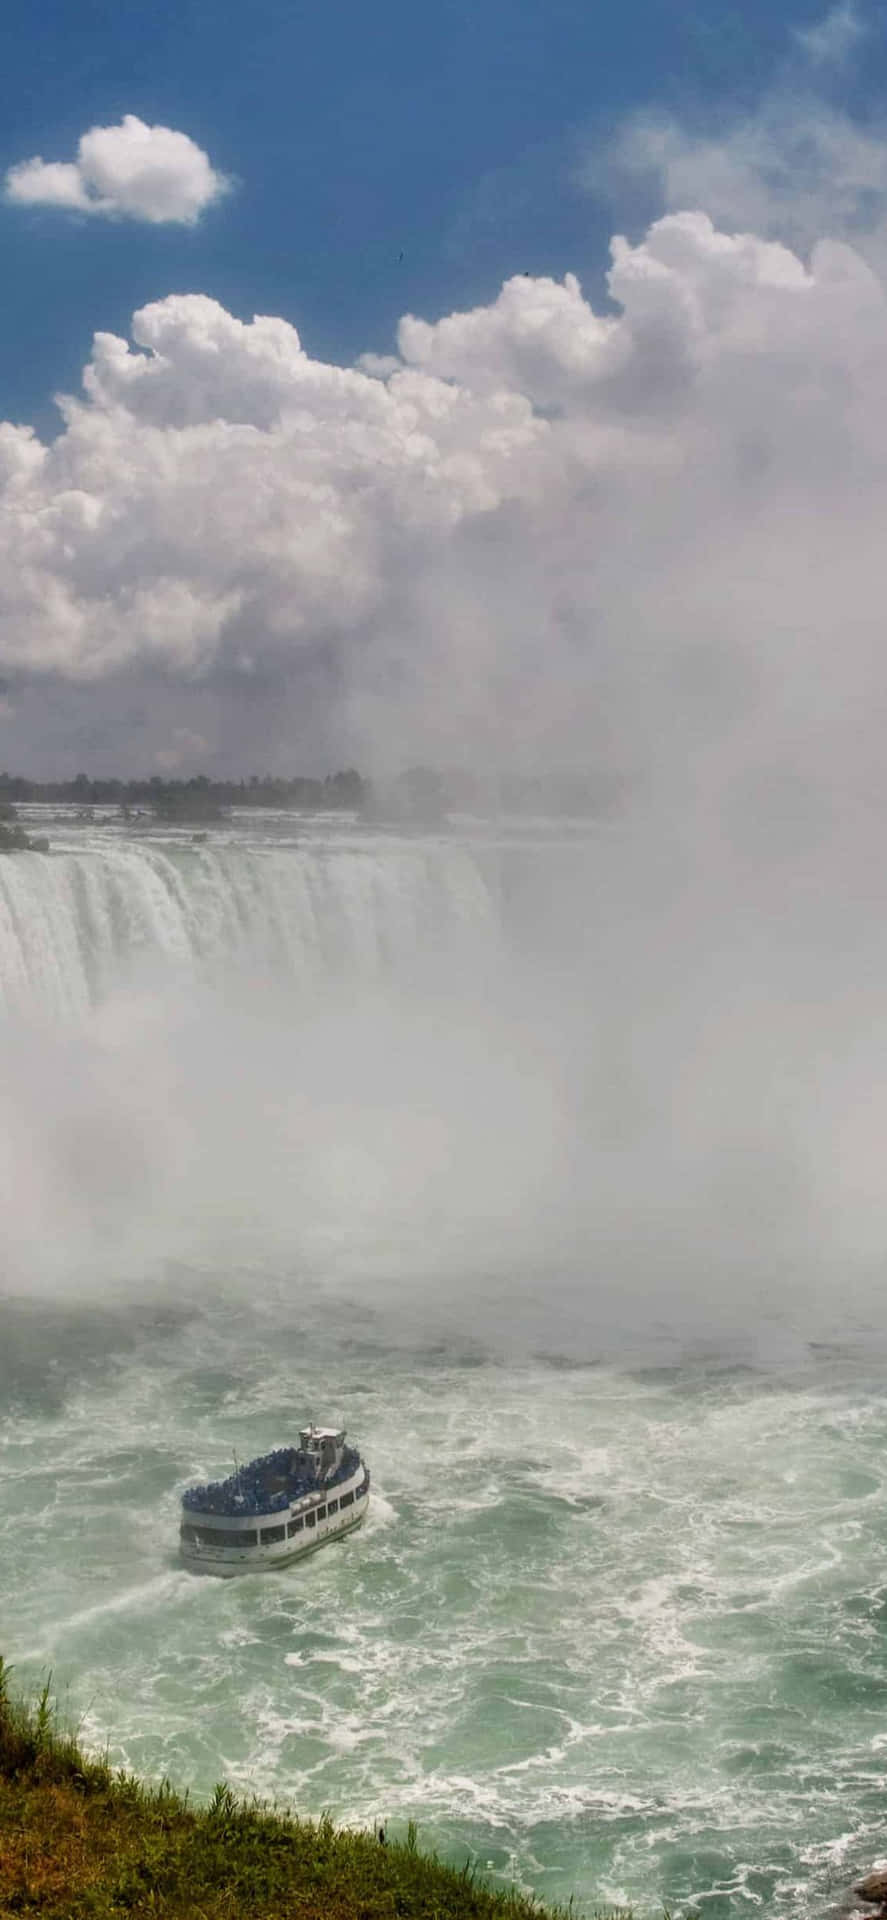 Fundode Tela Do Iphone X De Niagara Falls, Ontário.